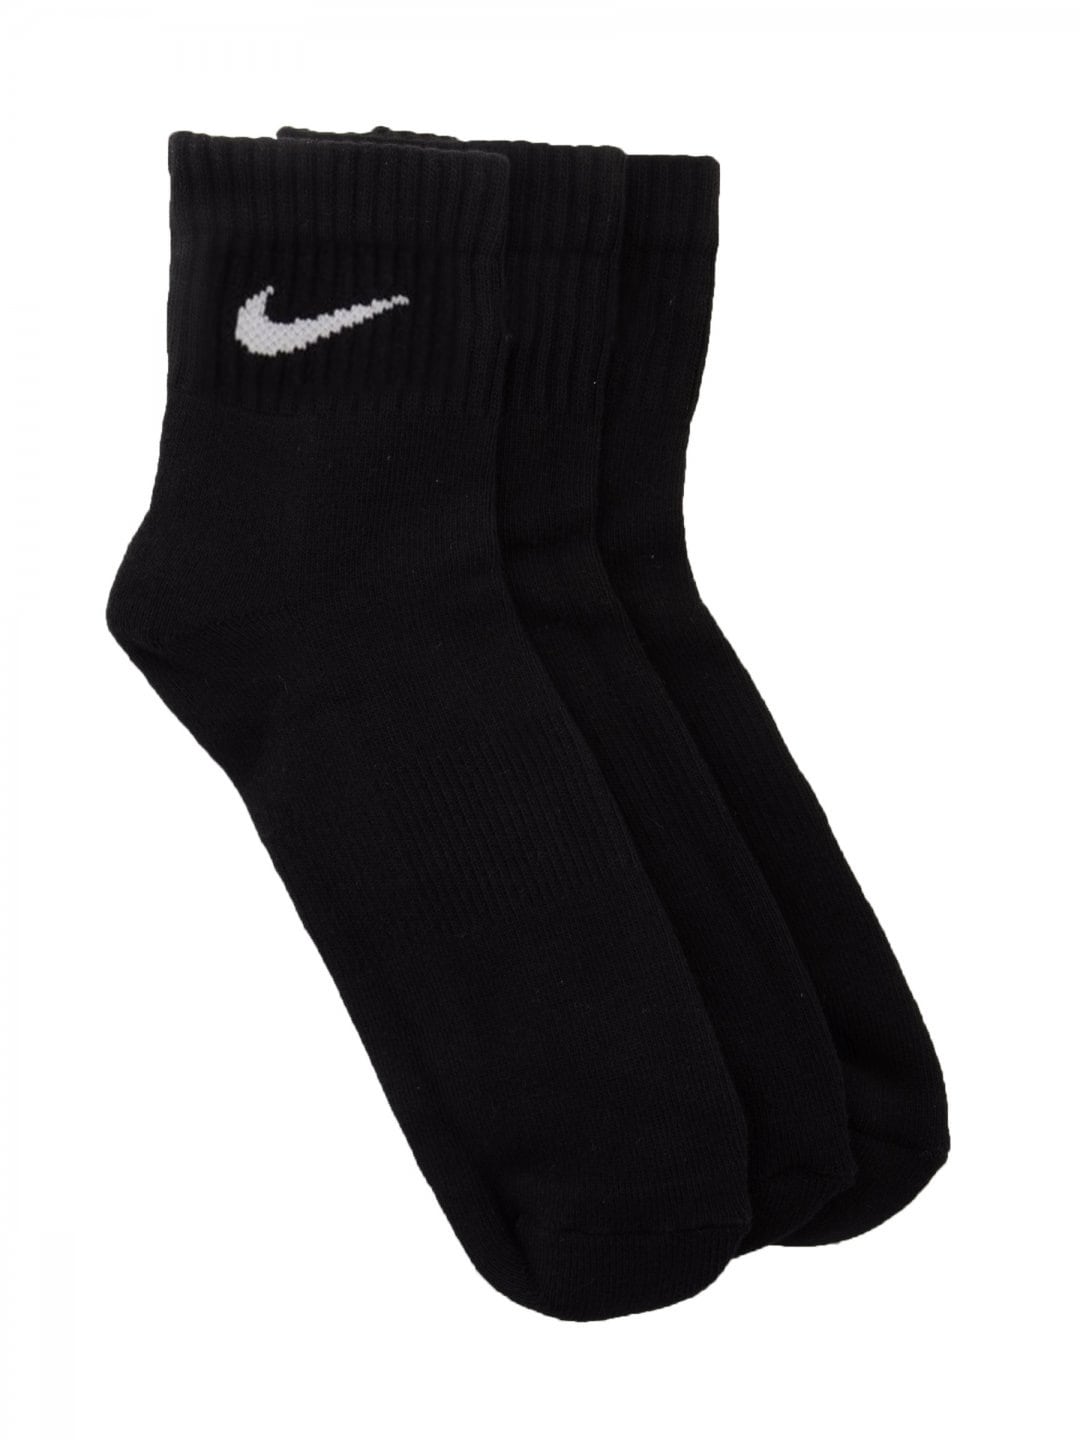 Nike Unisex Pack of 3 Black Socks